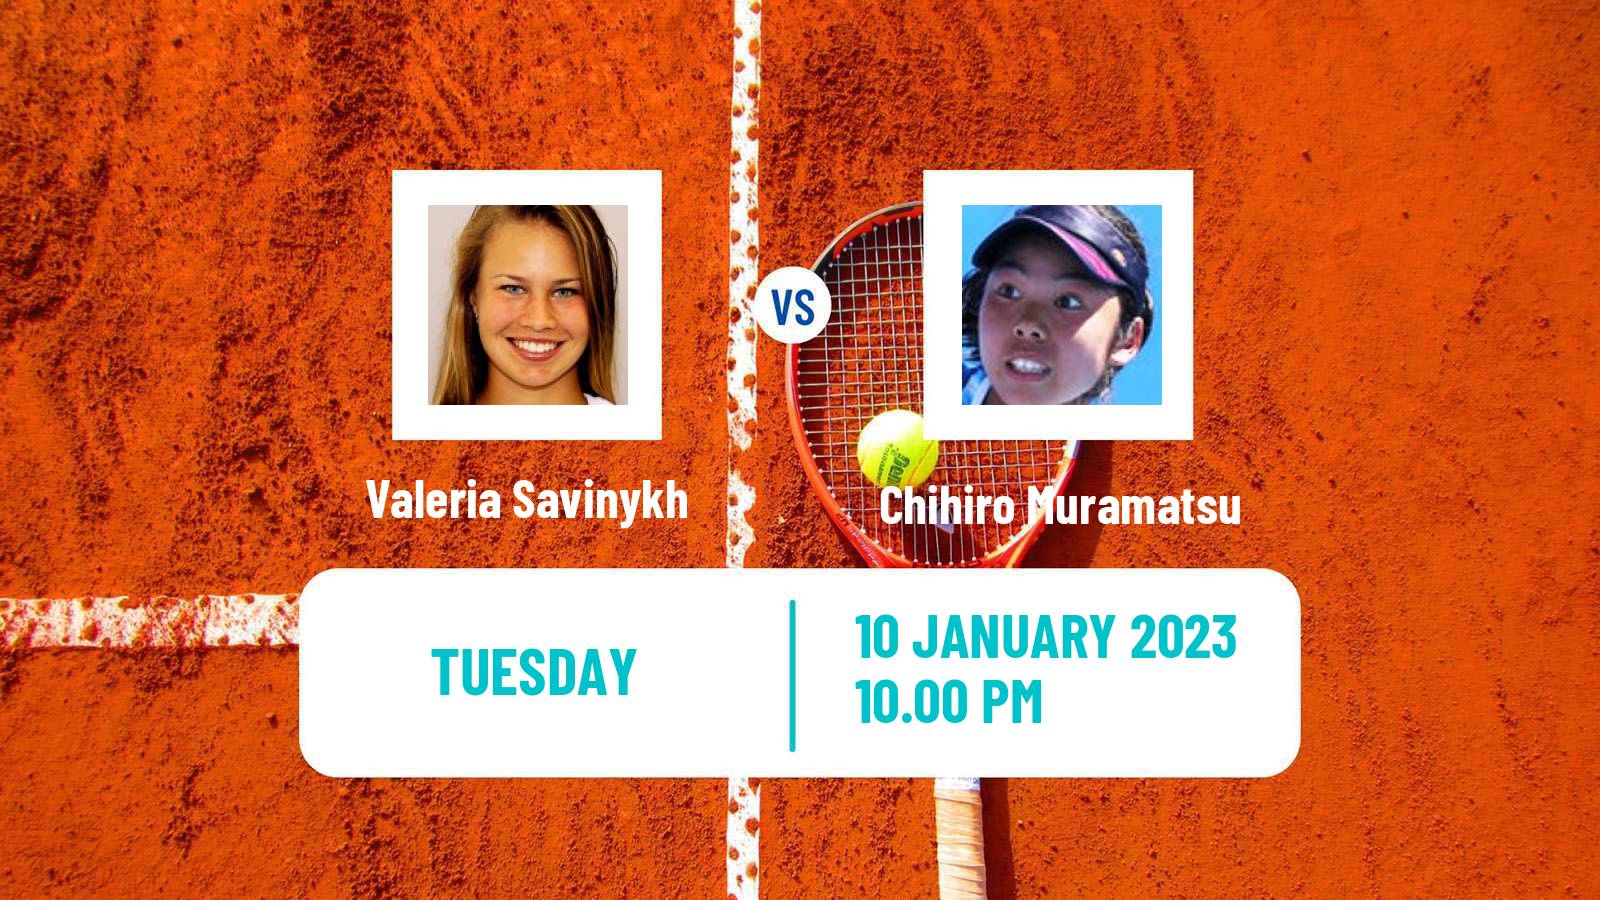 Tennis ITF Tournaments Valeria Savinykh - Chihiro Muramatsu